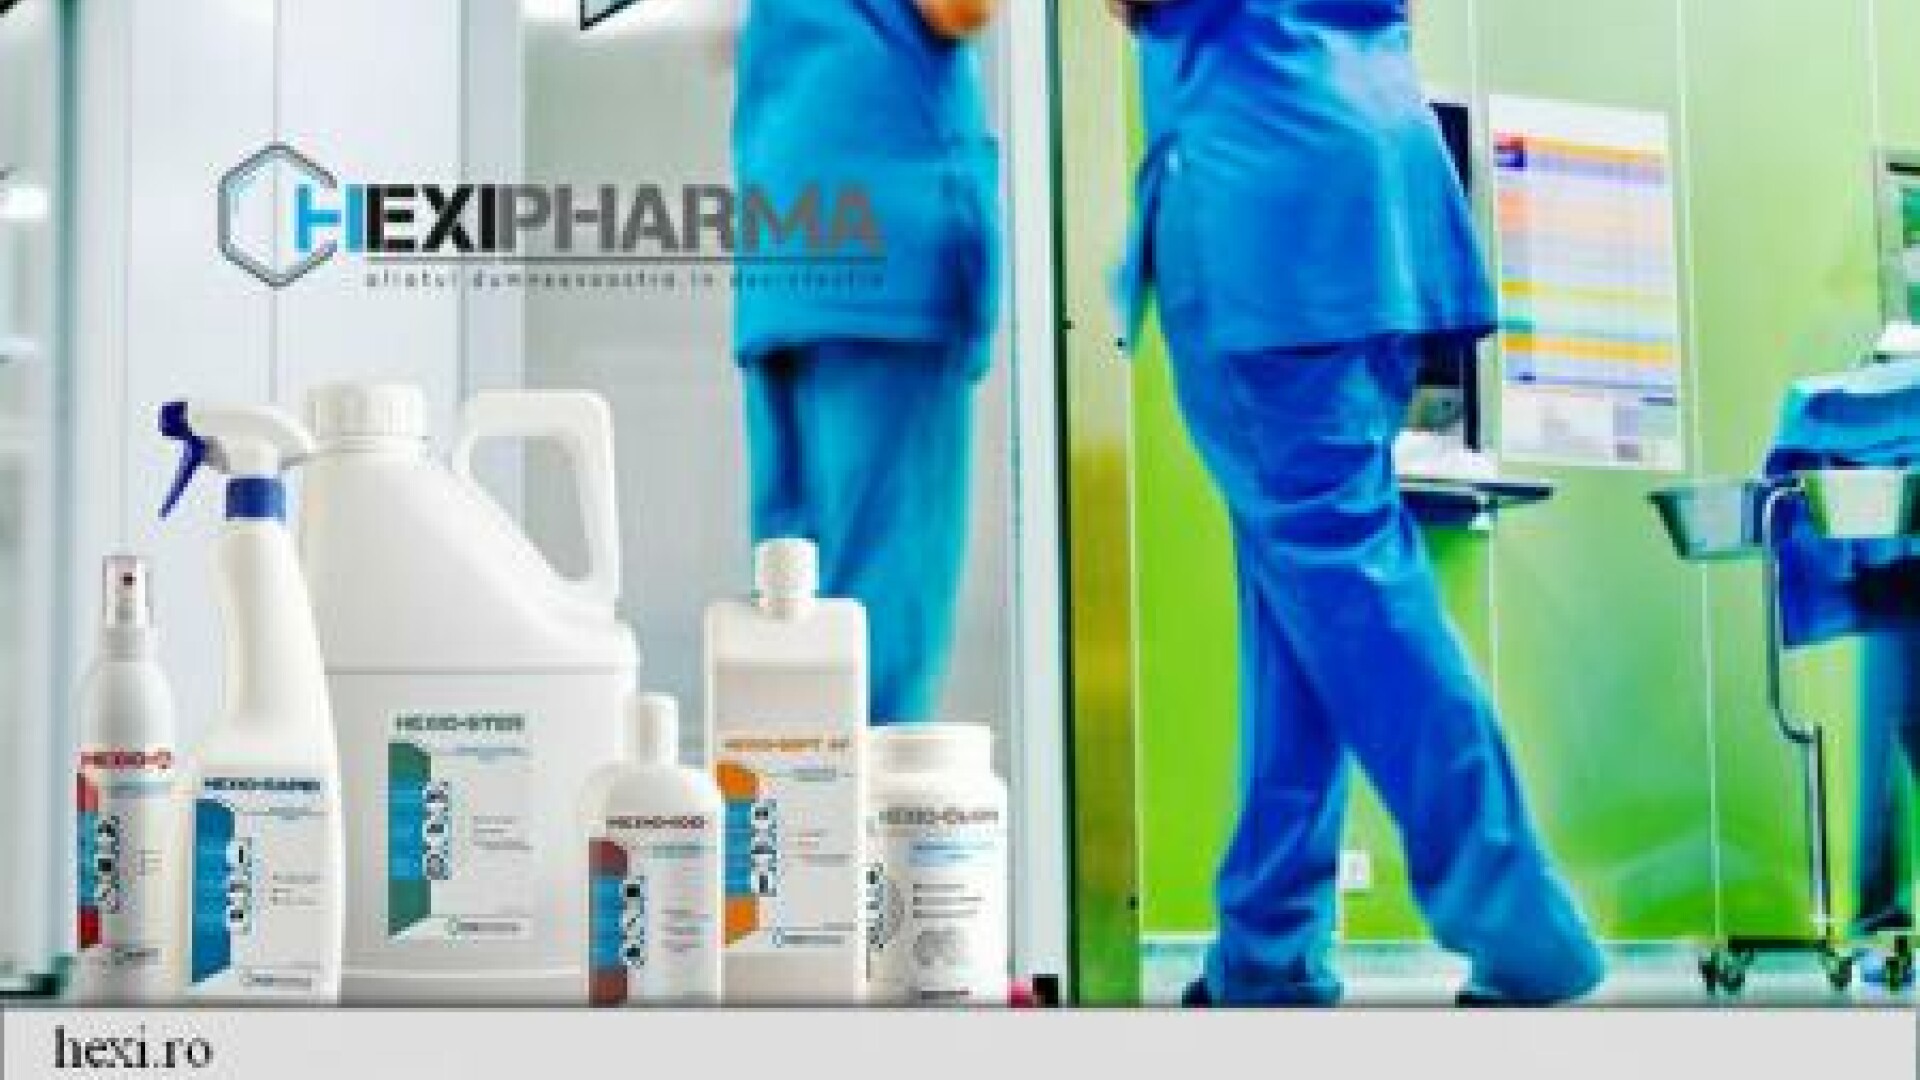 Hexi Pharma